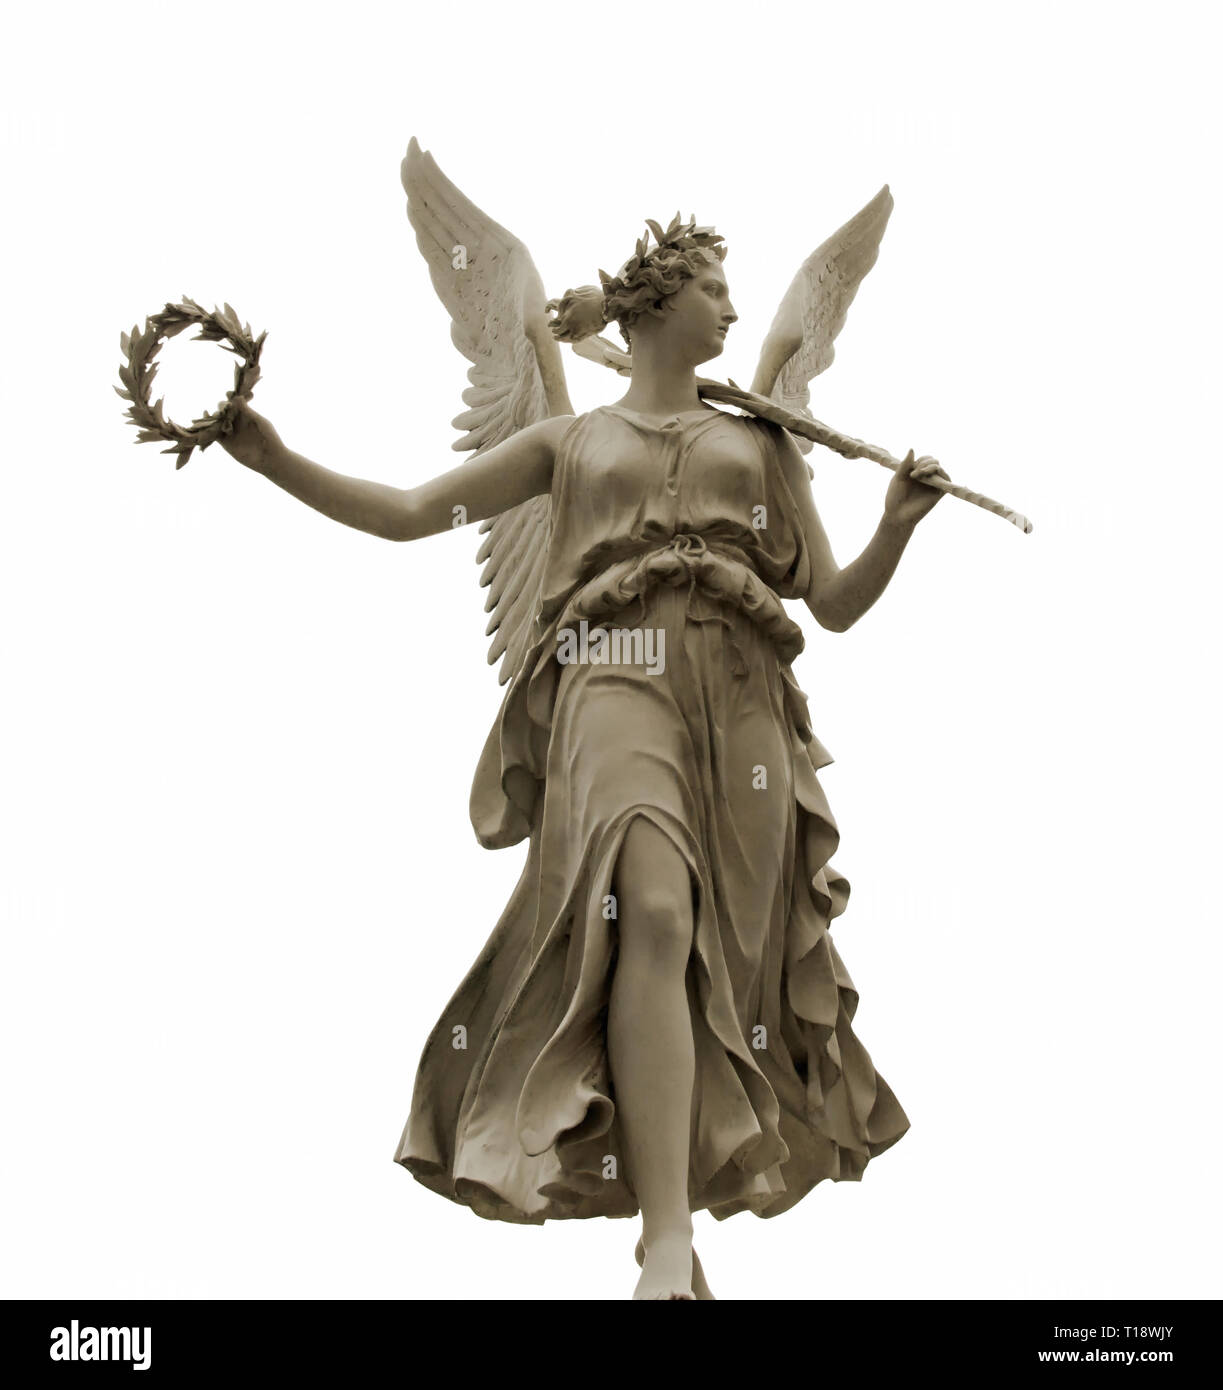 Vorderansicht der Statue der Göttin Nike, von freistellungspfaden isoliert  Stockfotografie - Alamy